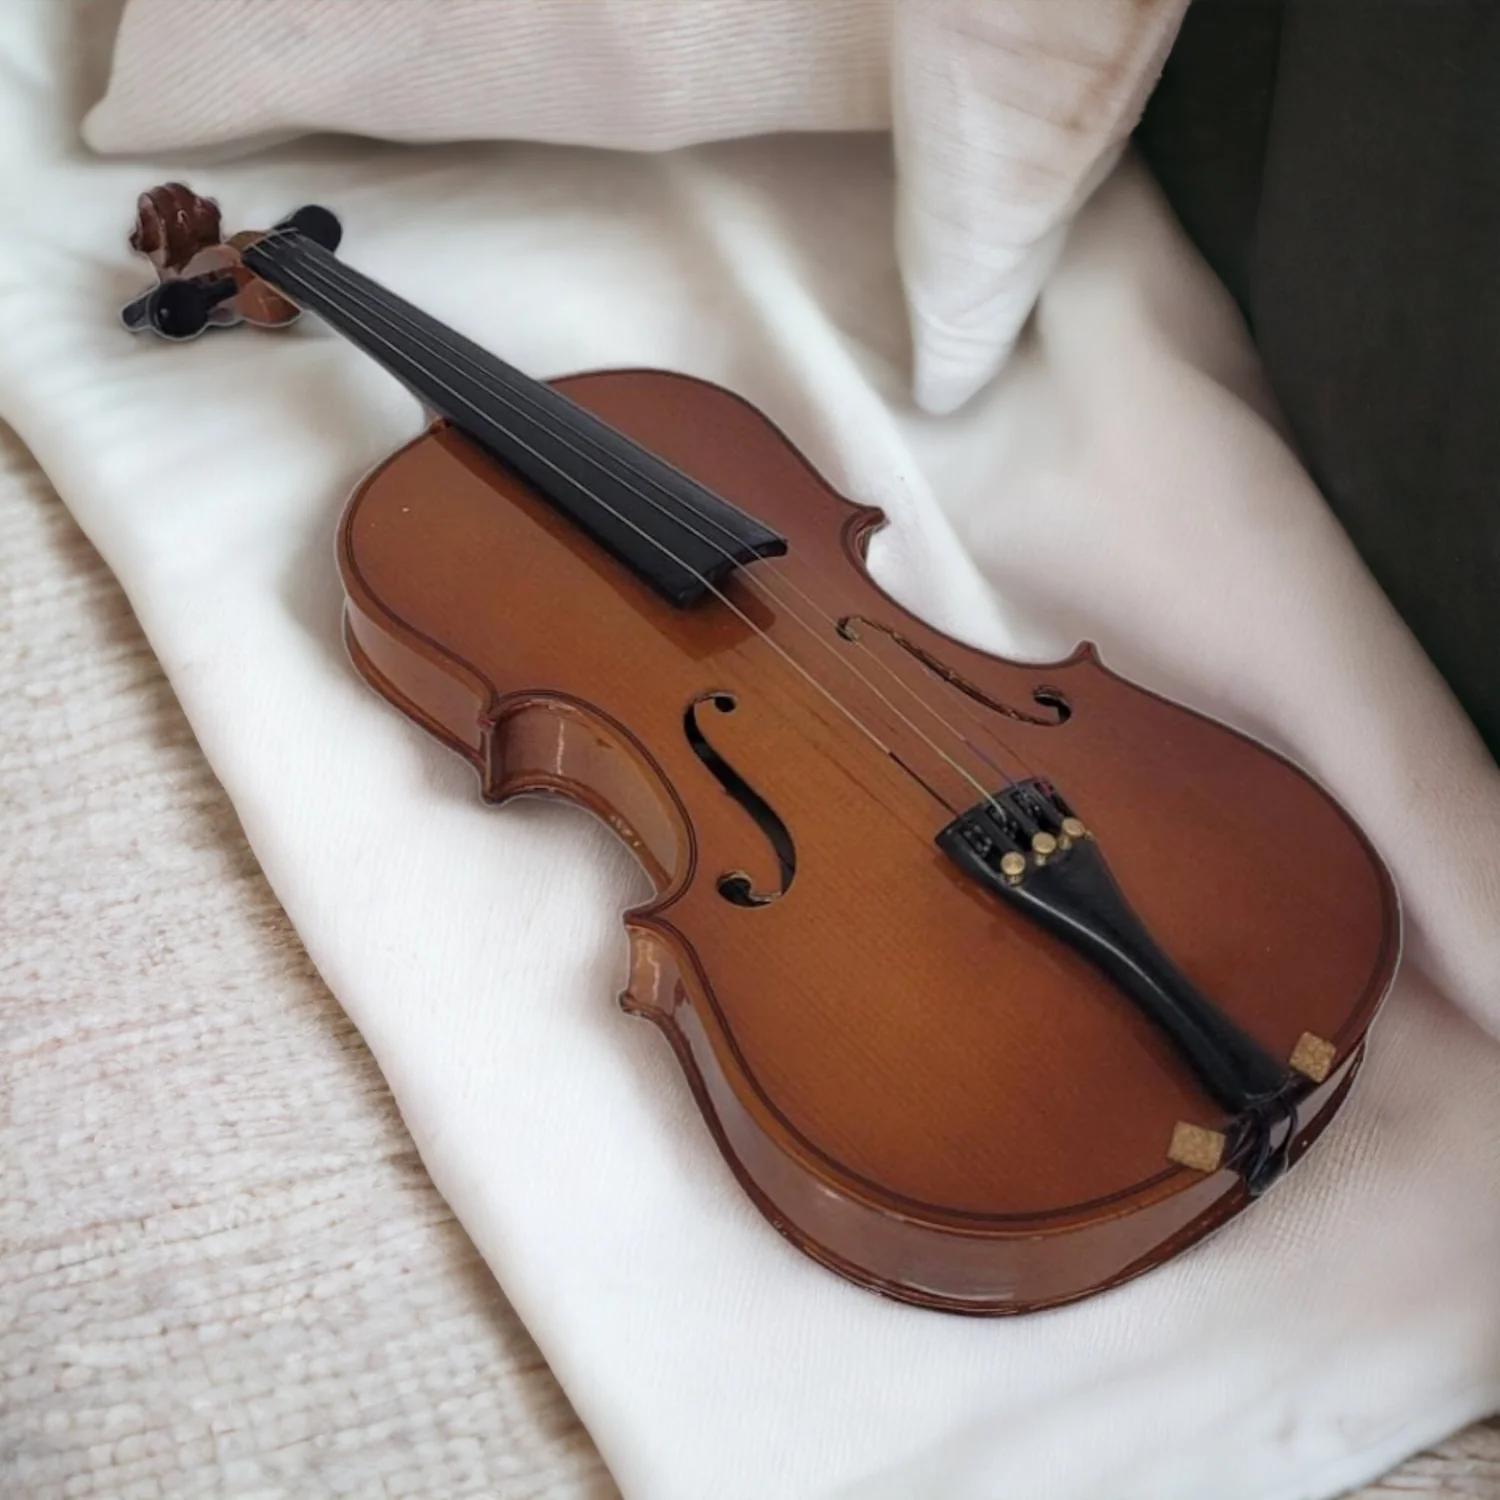 ancona vs paladino violin - Are Palatino violins any good